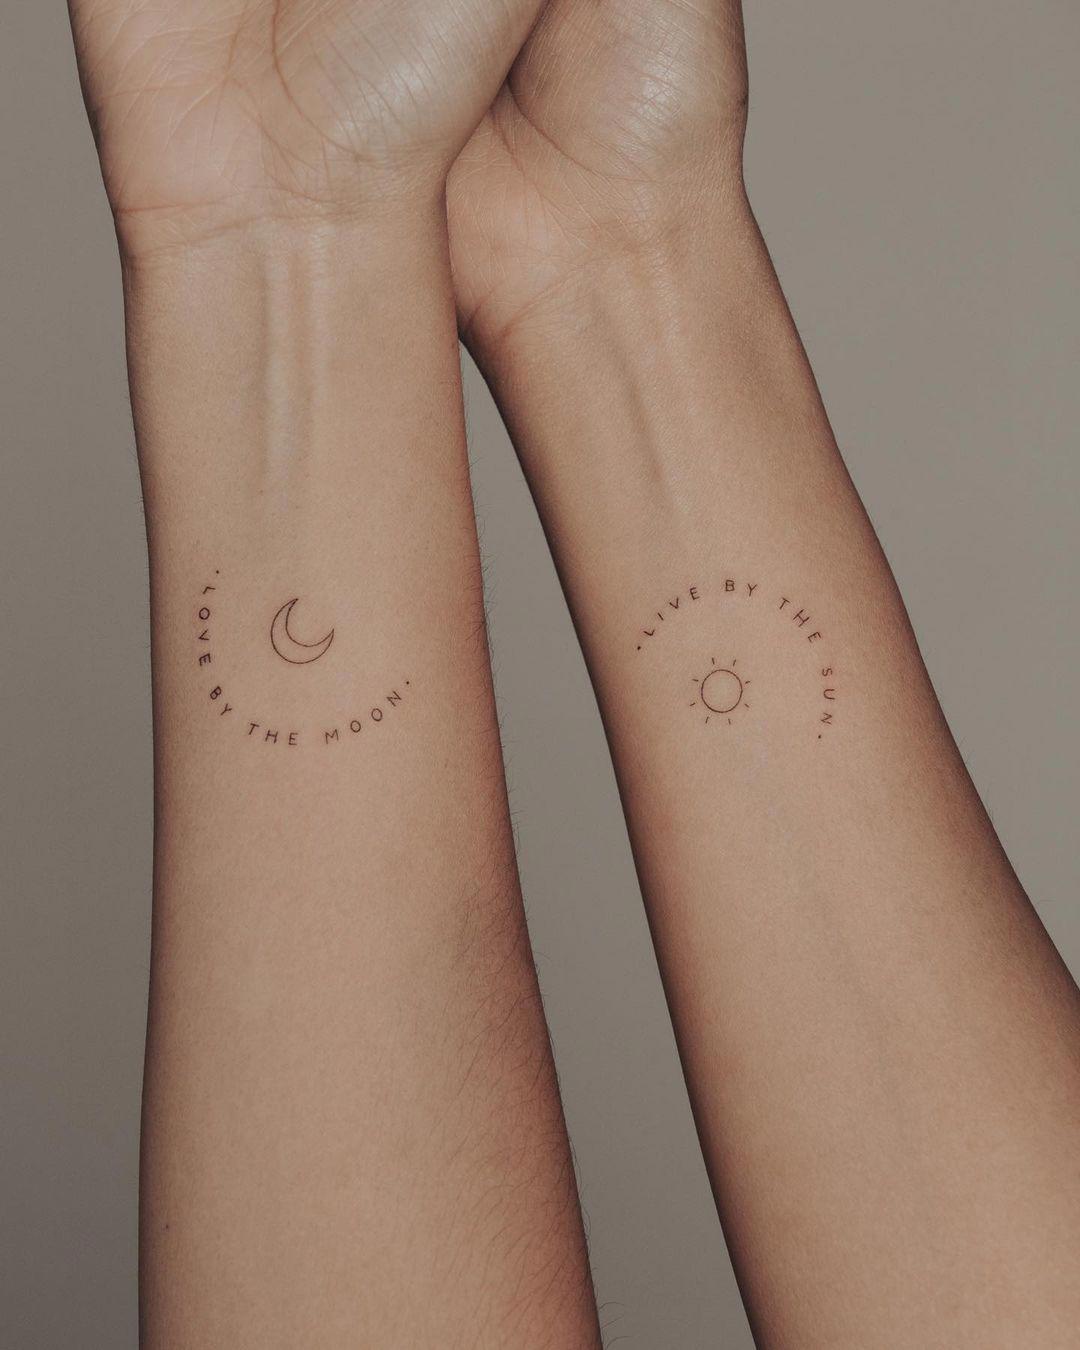 Tatuaje de sol y luna para parejas